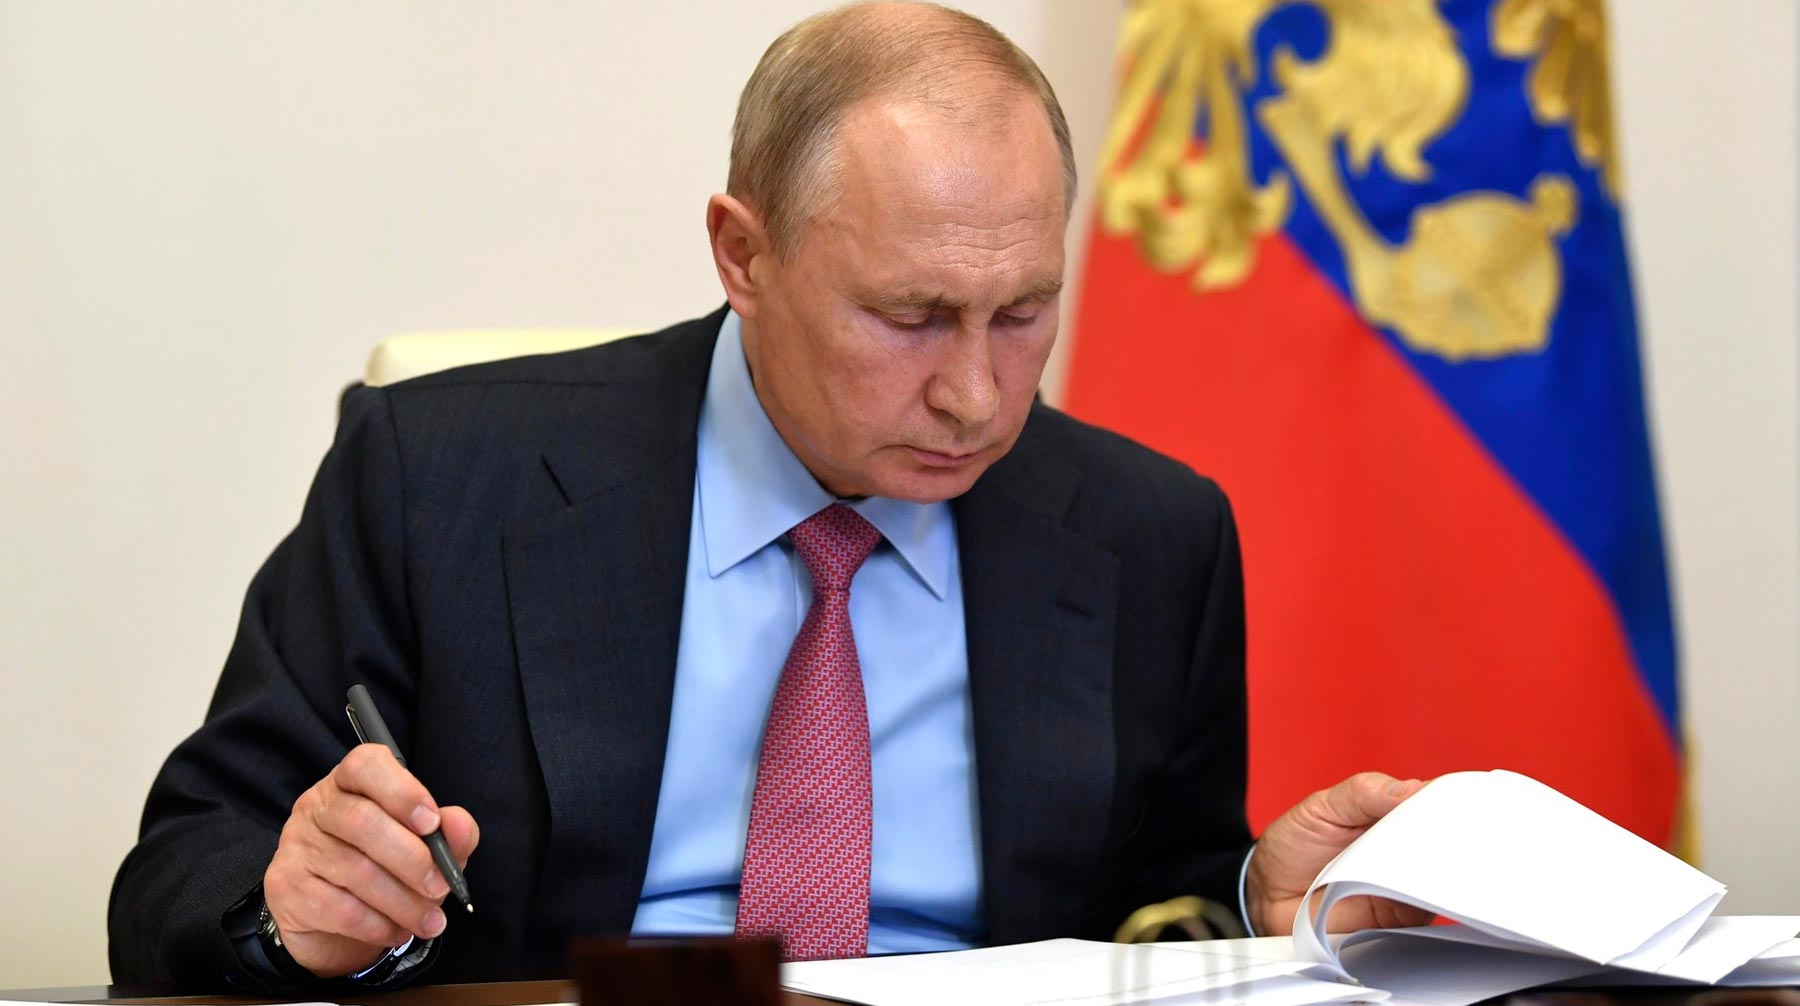 Число очных контактов президента снизилось, но он иногда посещает Кремль, сообщил пресс-секретарь главы государства Фото: © Kremlin Pool